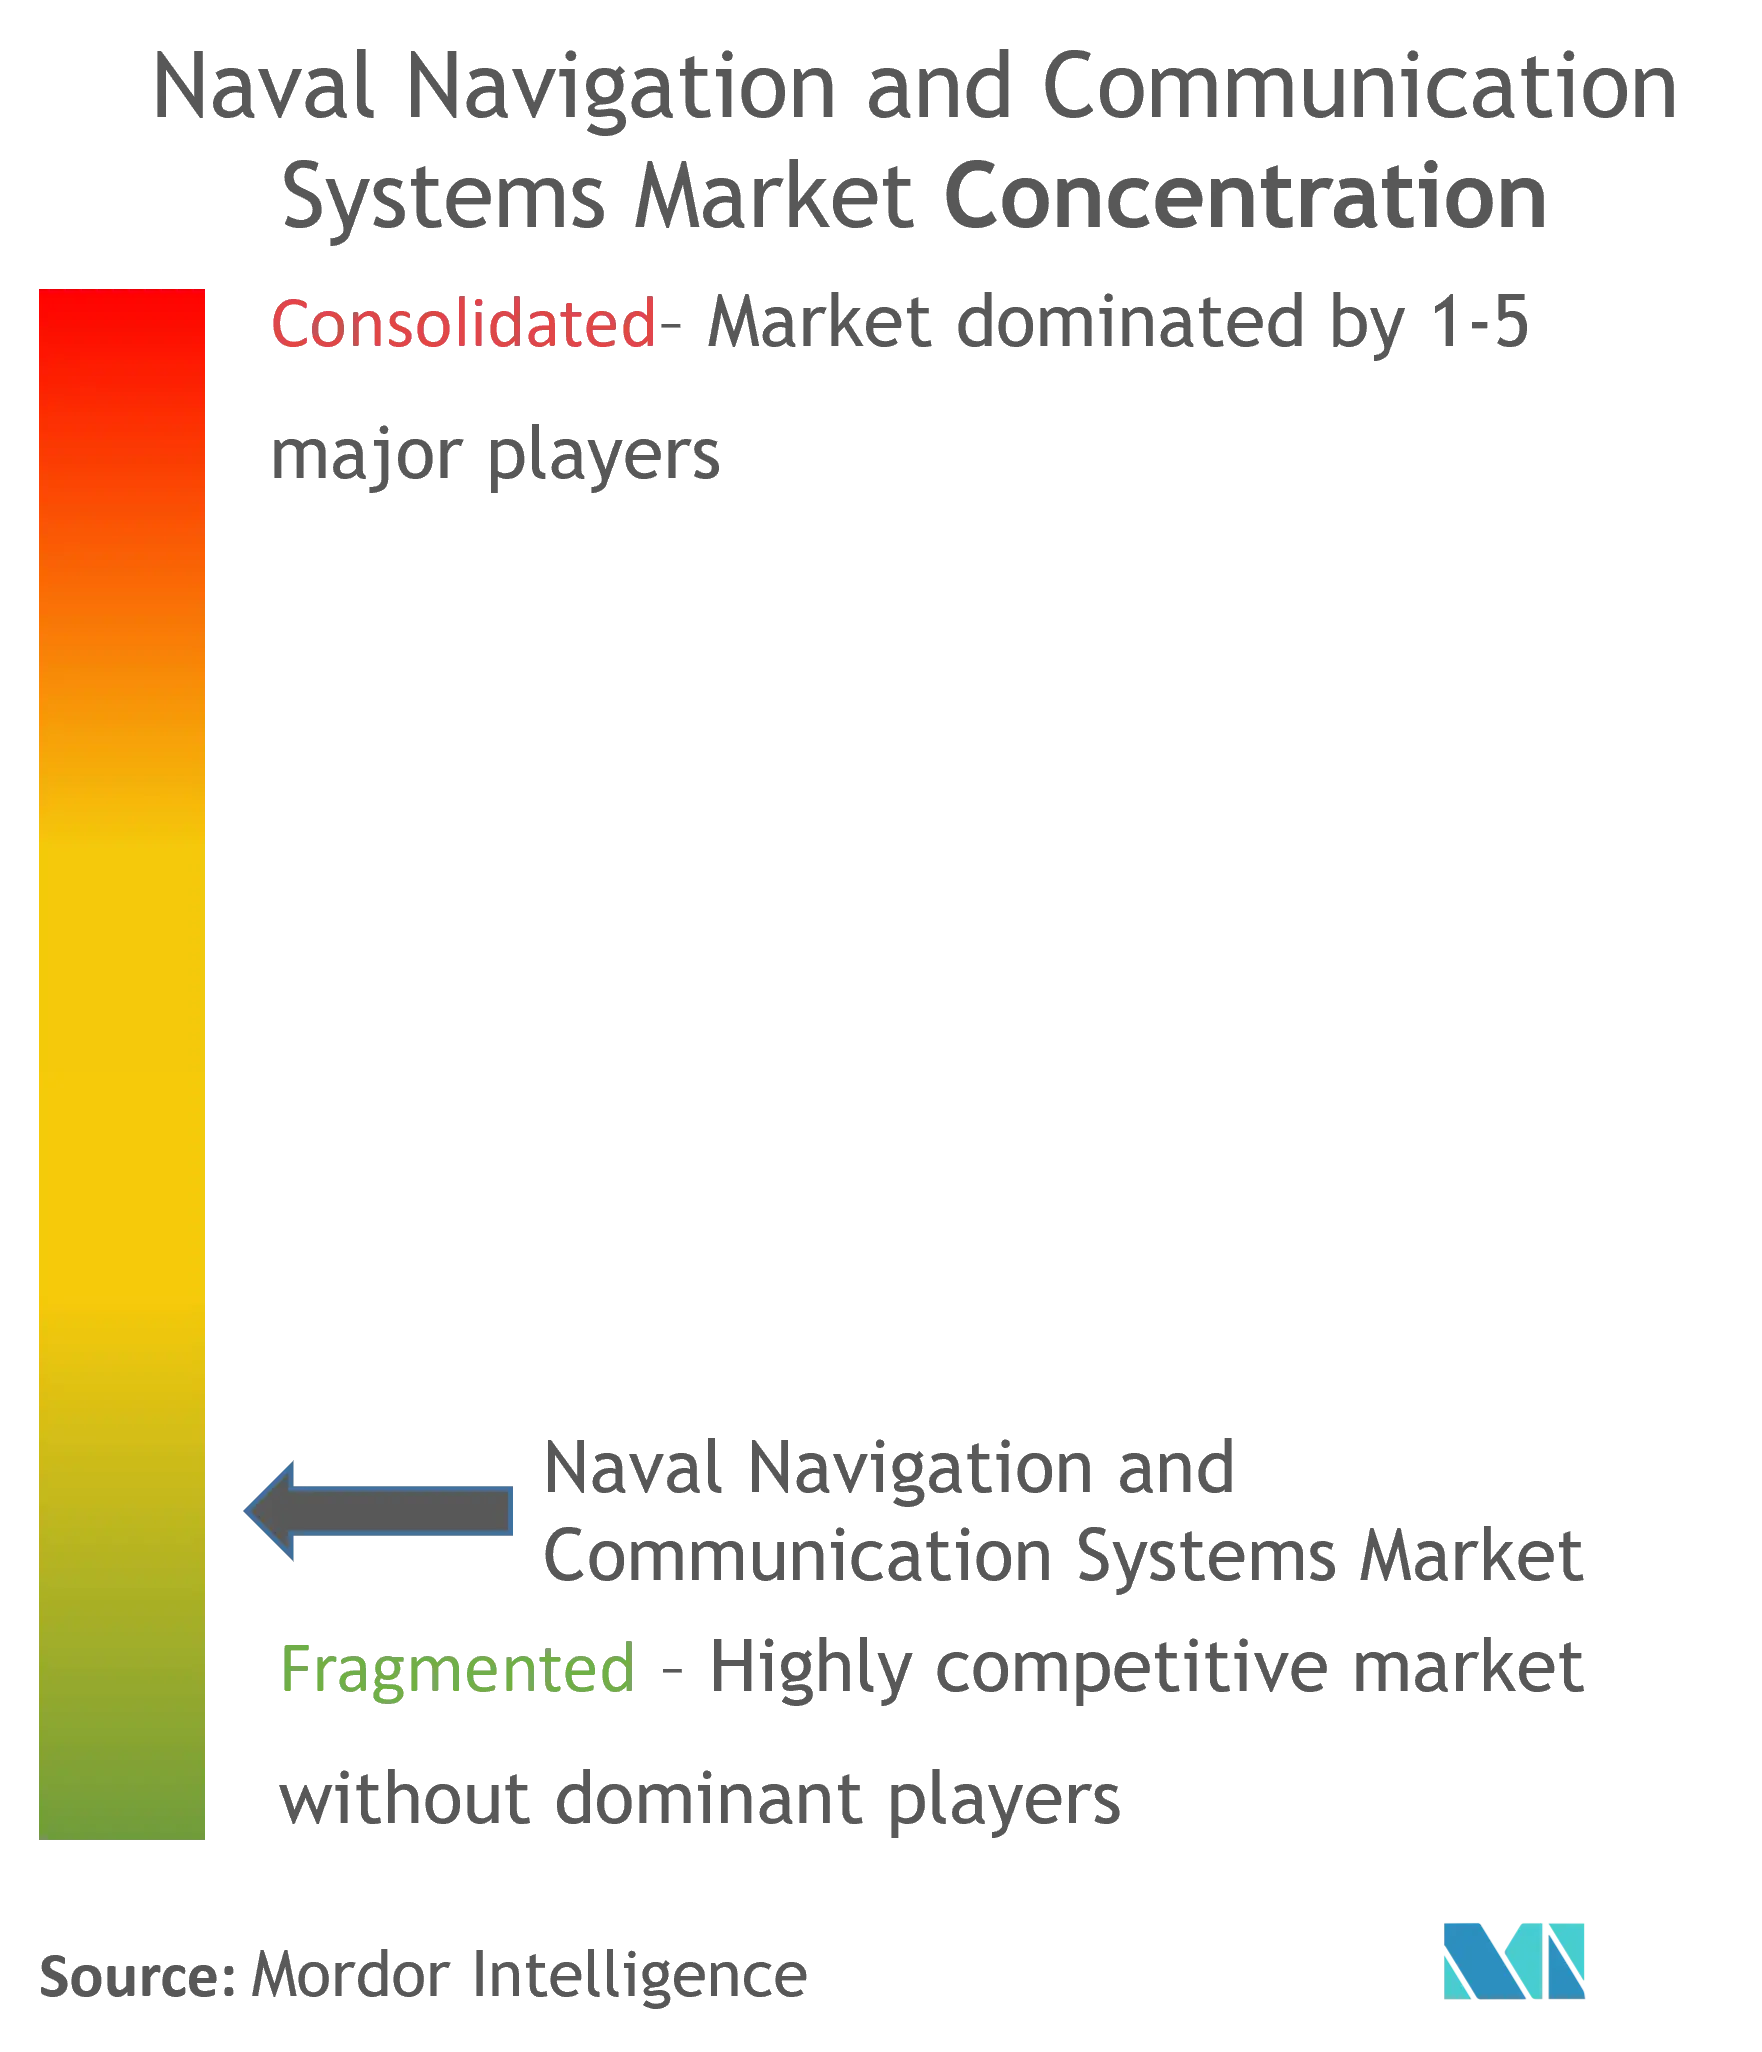 Concentración del mercado de sistemas de comunicación y navegación naval